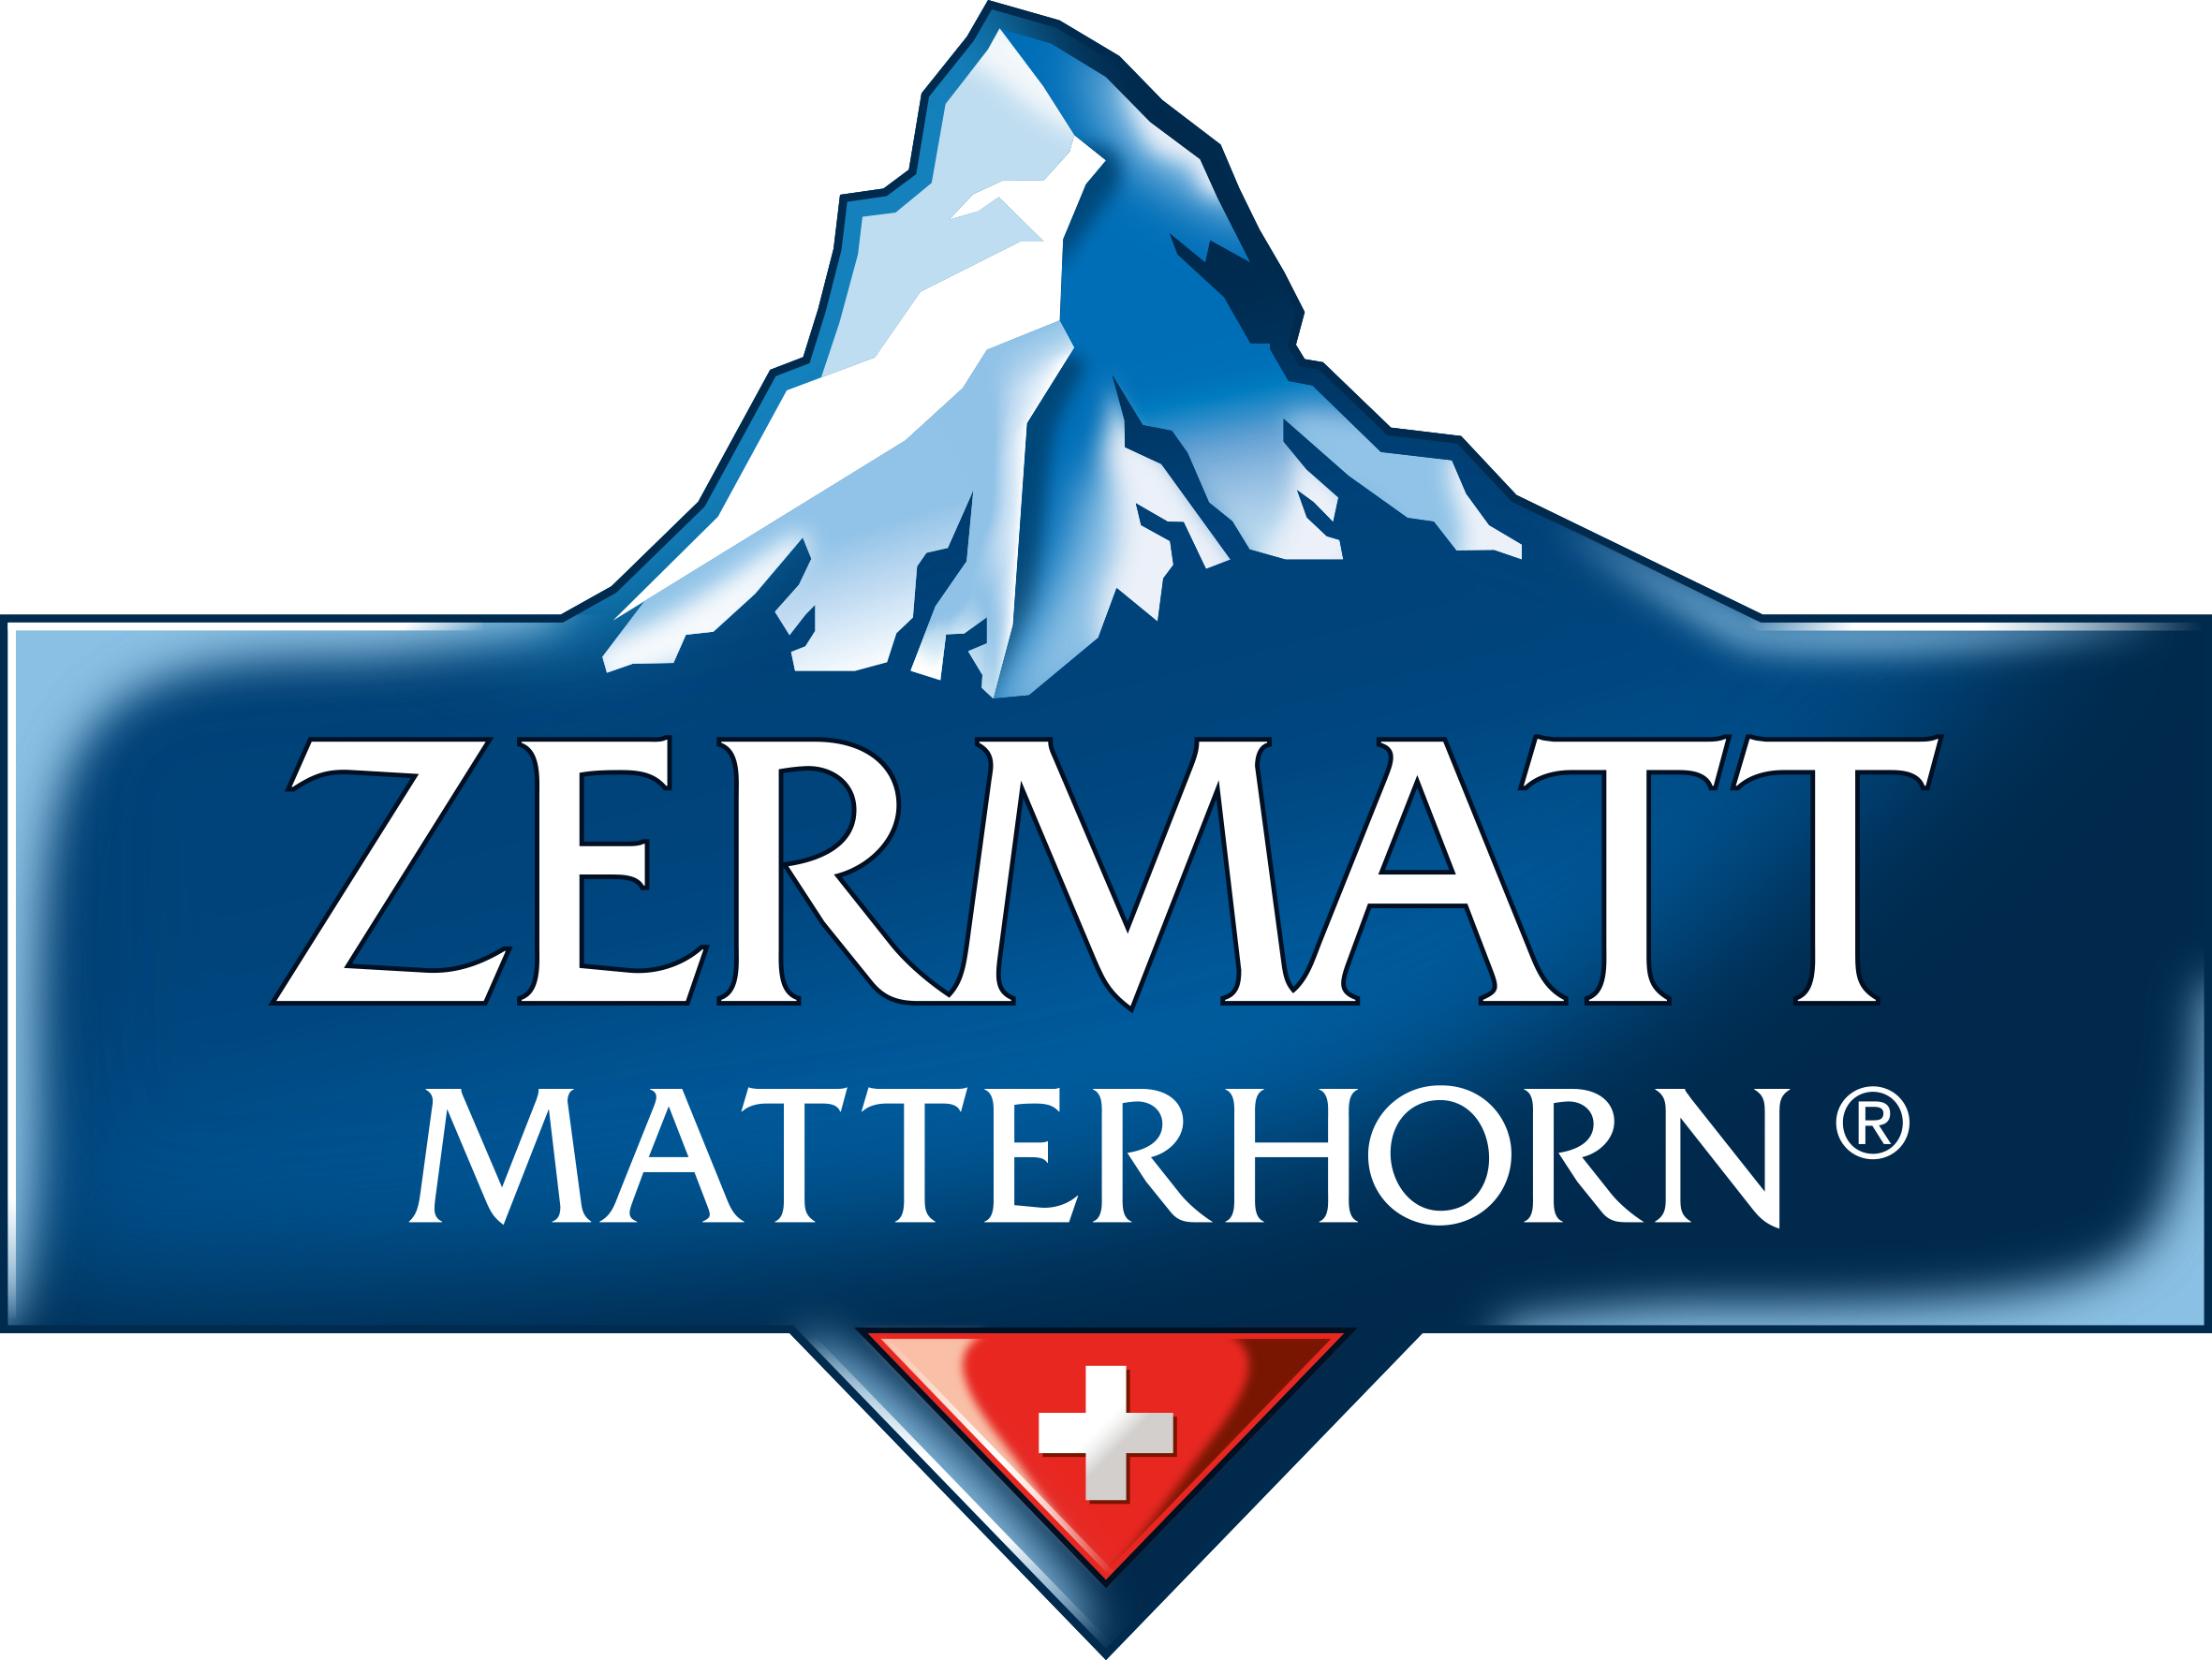 ZERMATT MATTERHORN